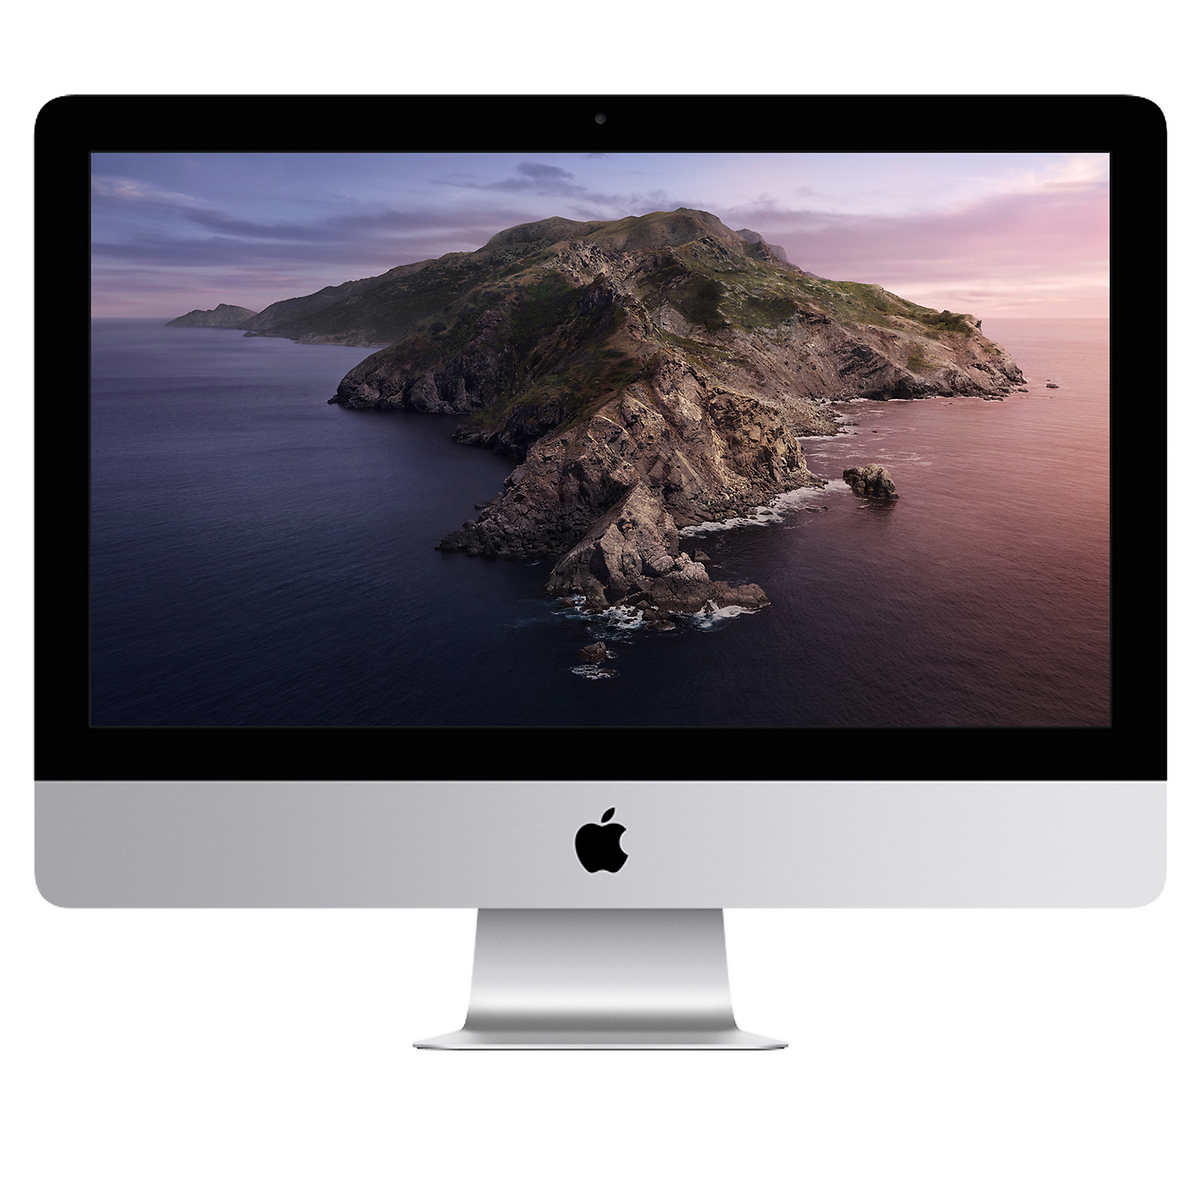 iMac 21.5-inch Late2012 - デスクトップ型PC